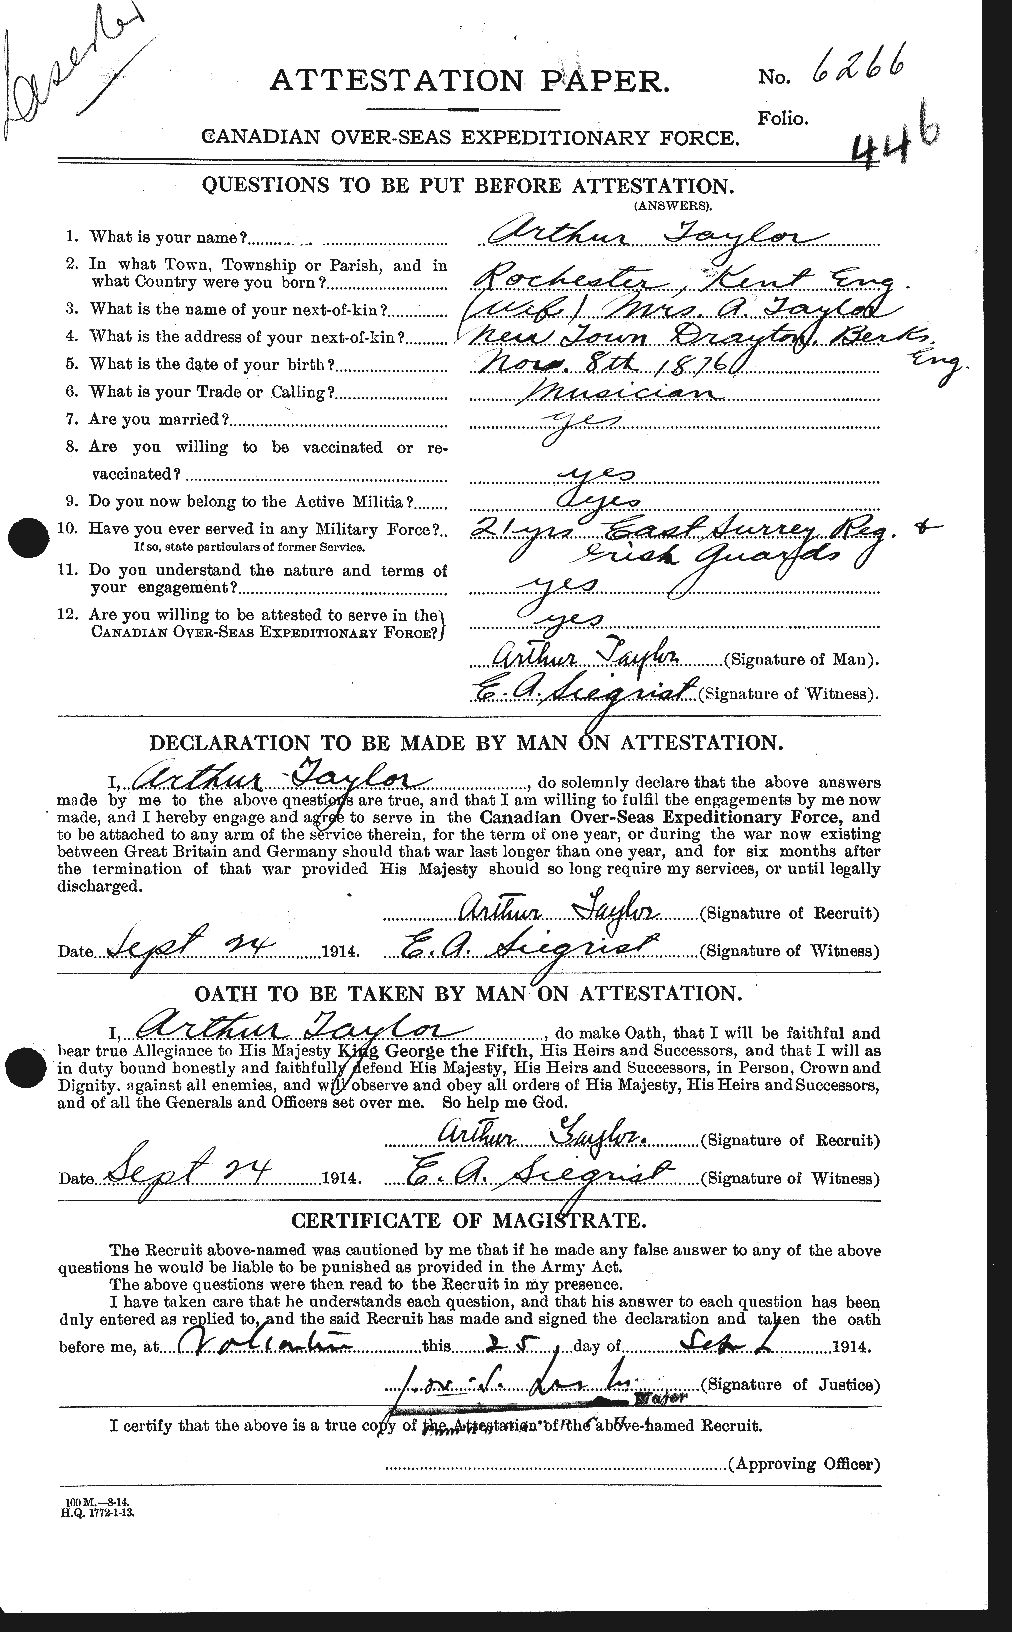 Dossiers du Personnel de la Première Guerre mondiale - CEC 626699a